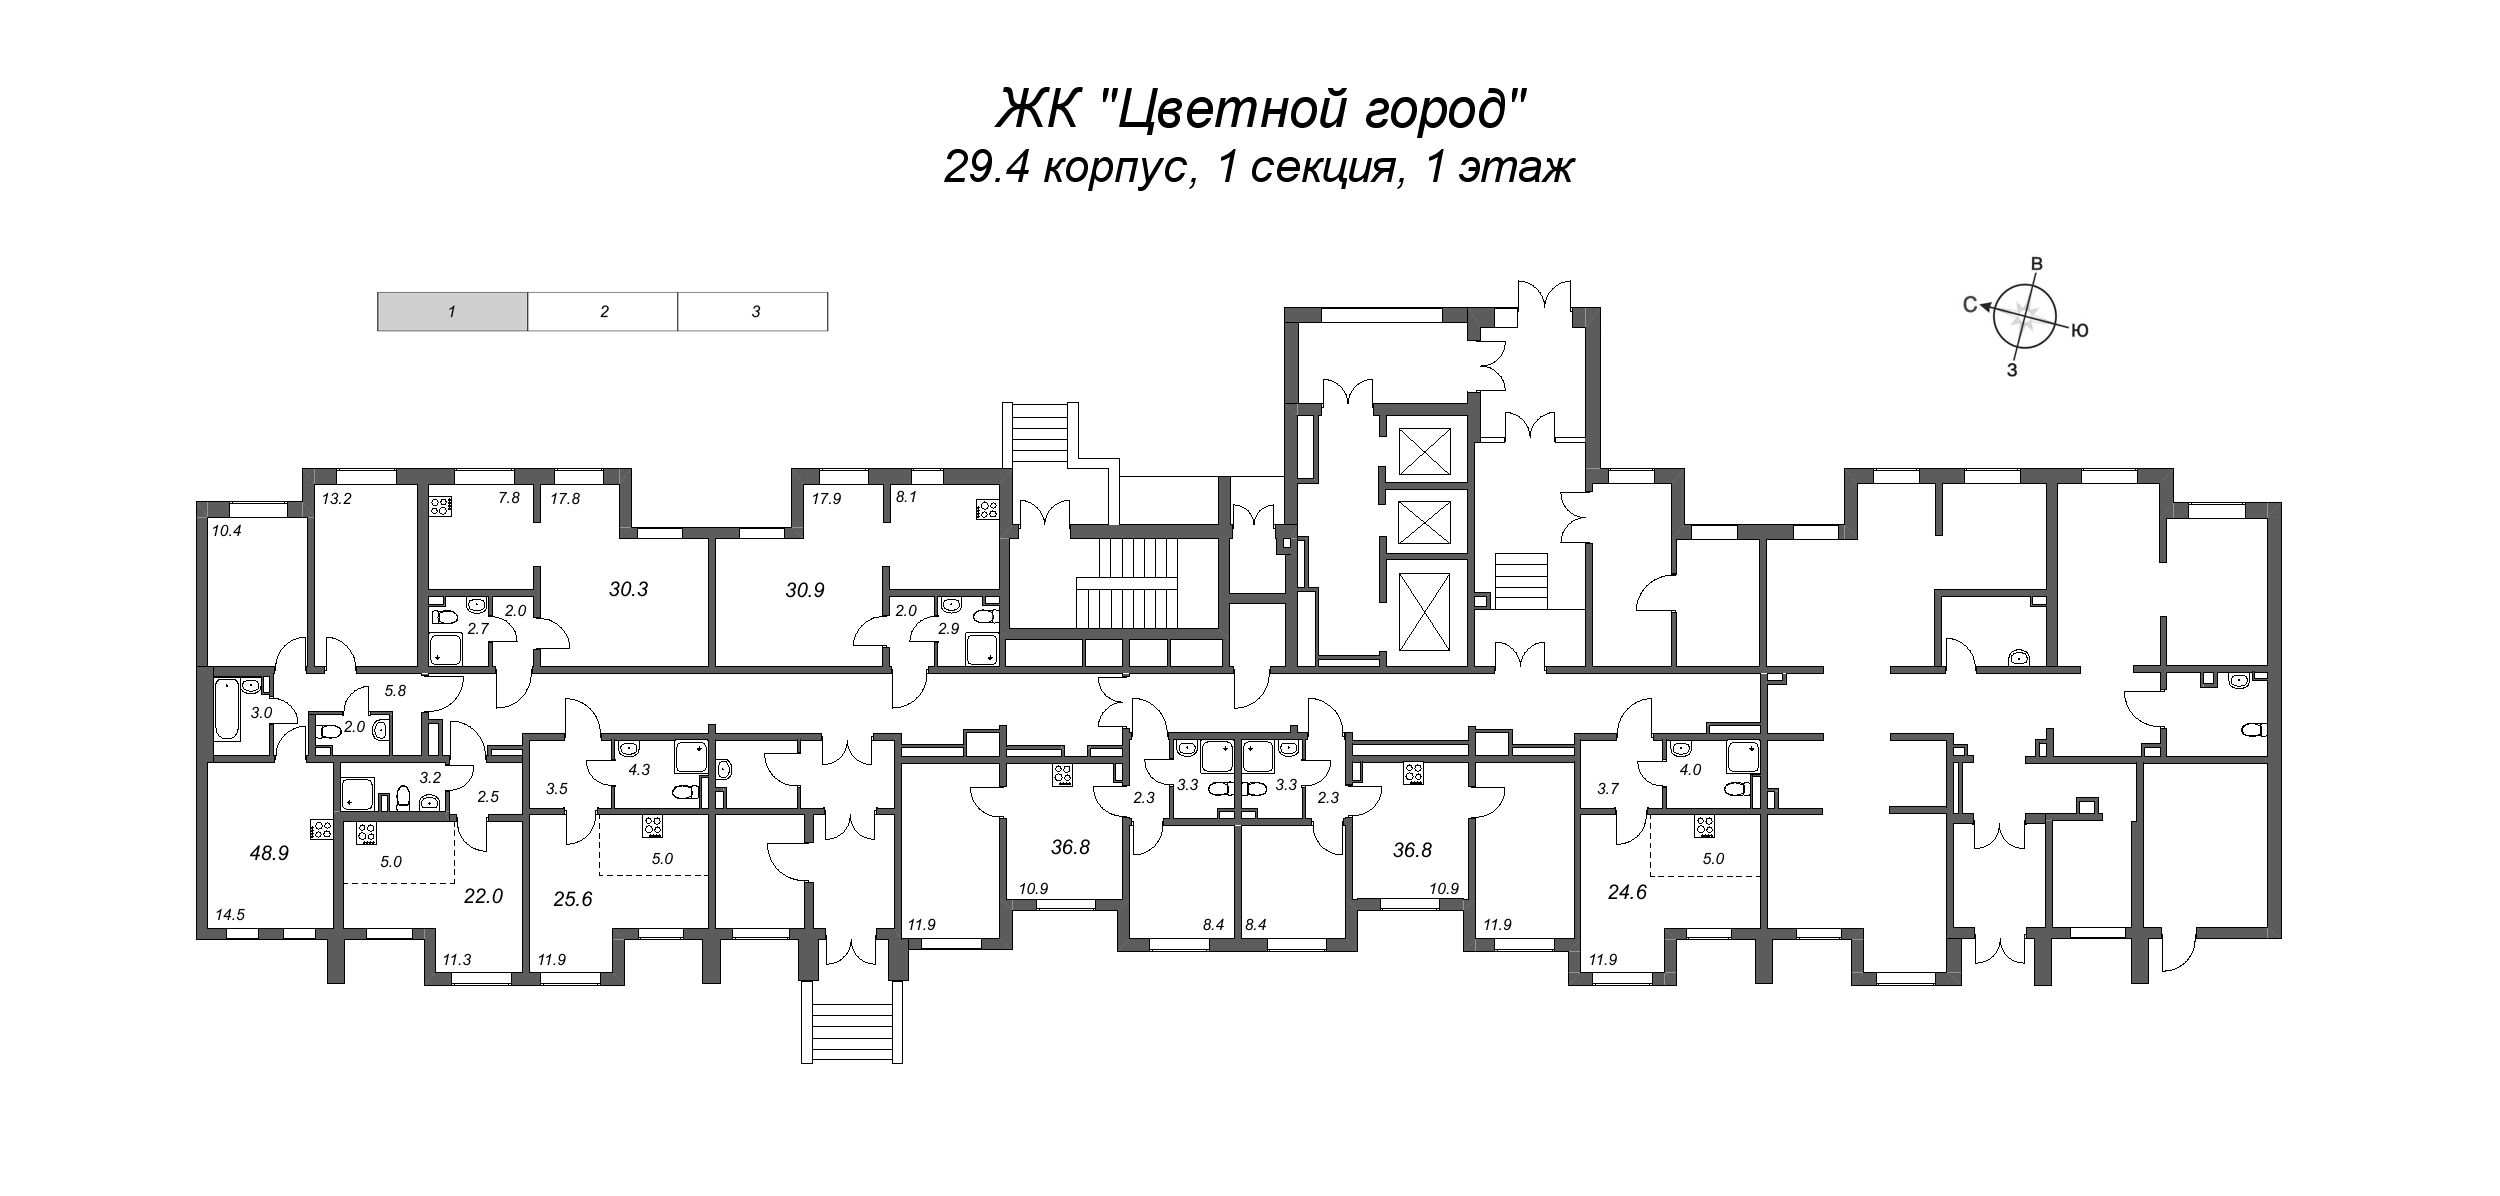 Квартира-студия, 24.6 м² в ЖК "Цветной город" - планировка этажа